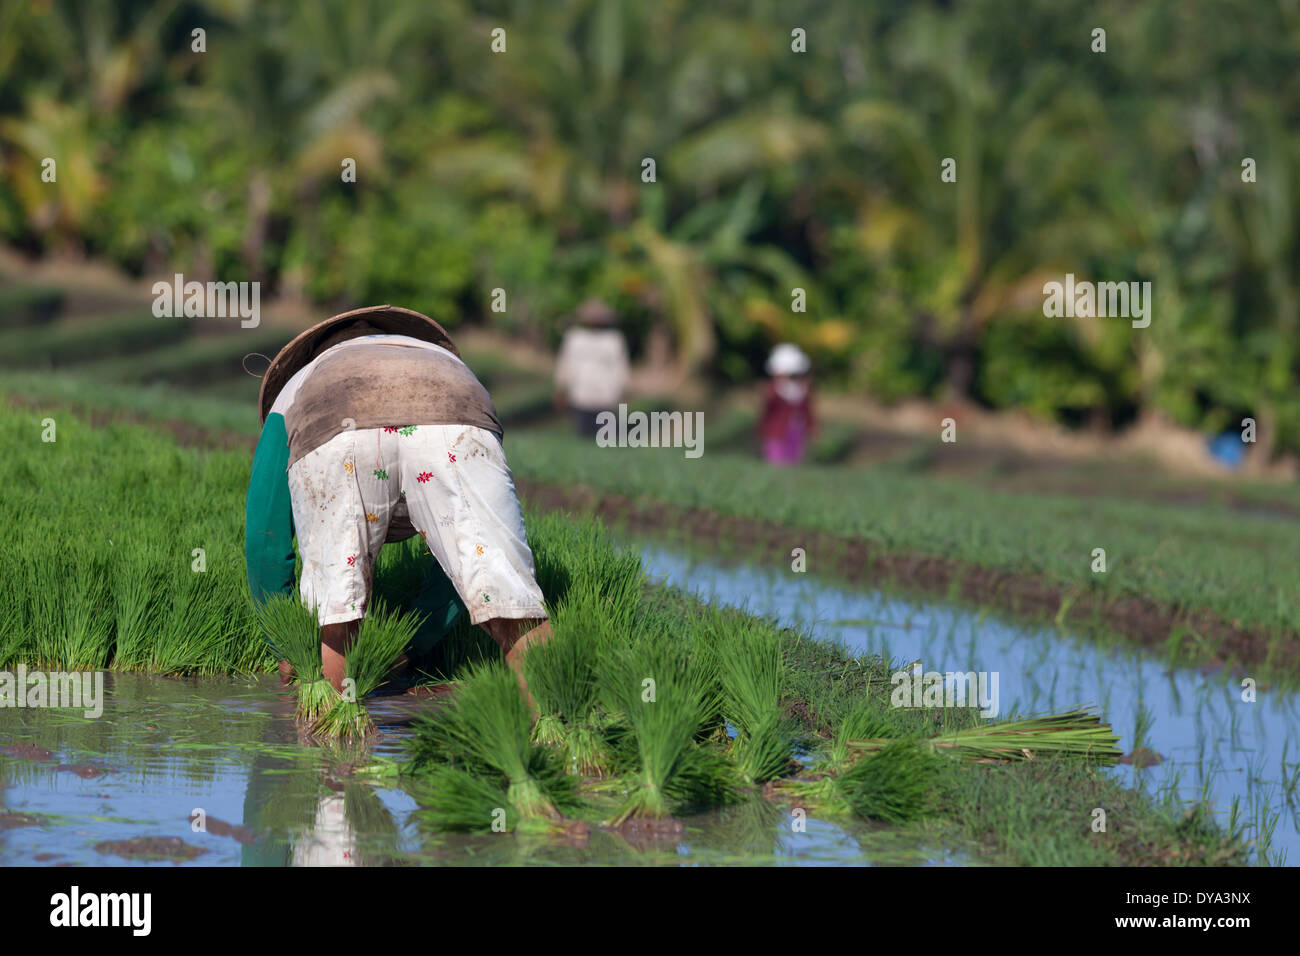 Donna di piantare il riso sul campo di riso nella regione di Antosari e Belimbing (probabilmente più vicino a Antosari), Bali, Indonesia Foto Stock